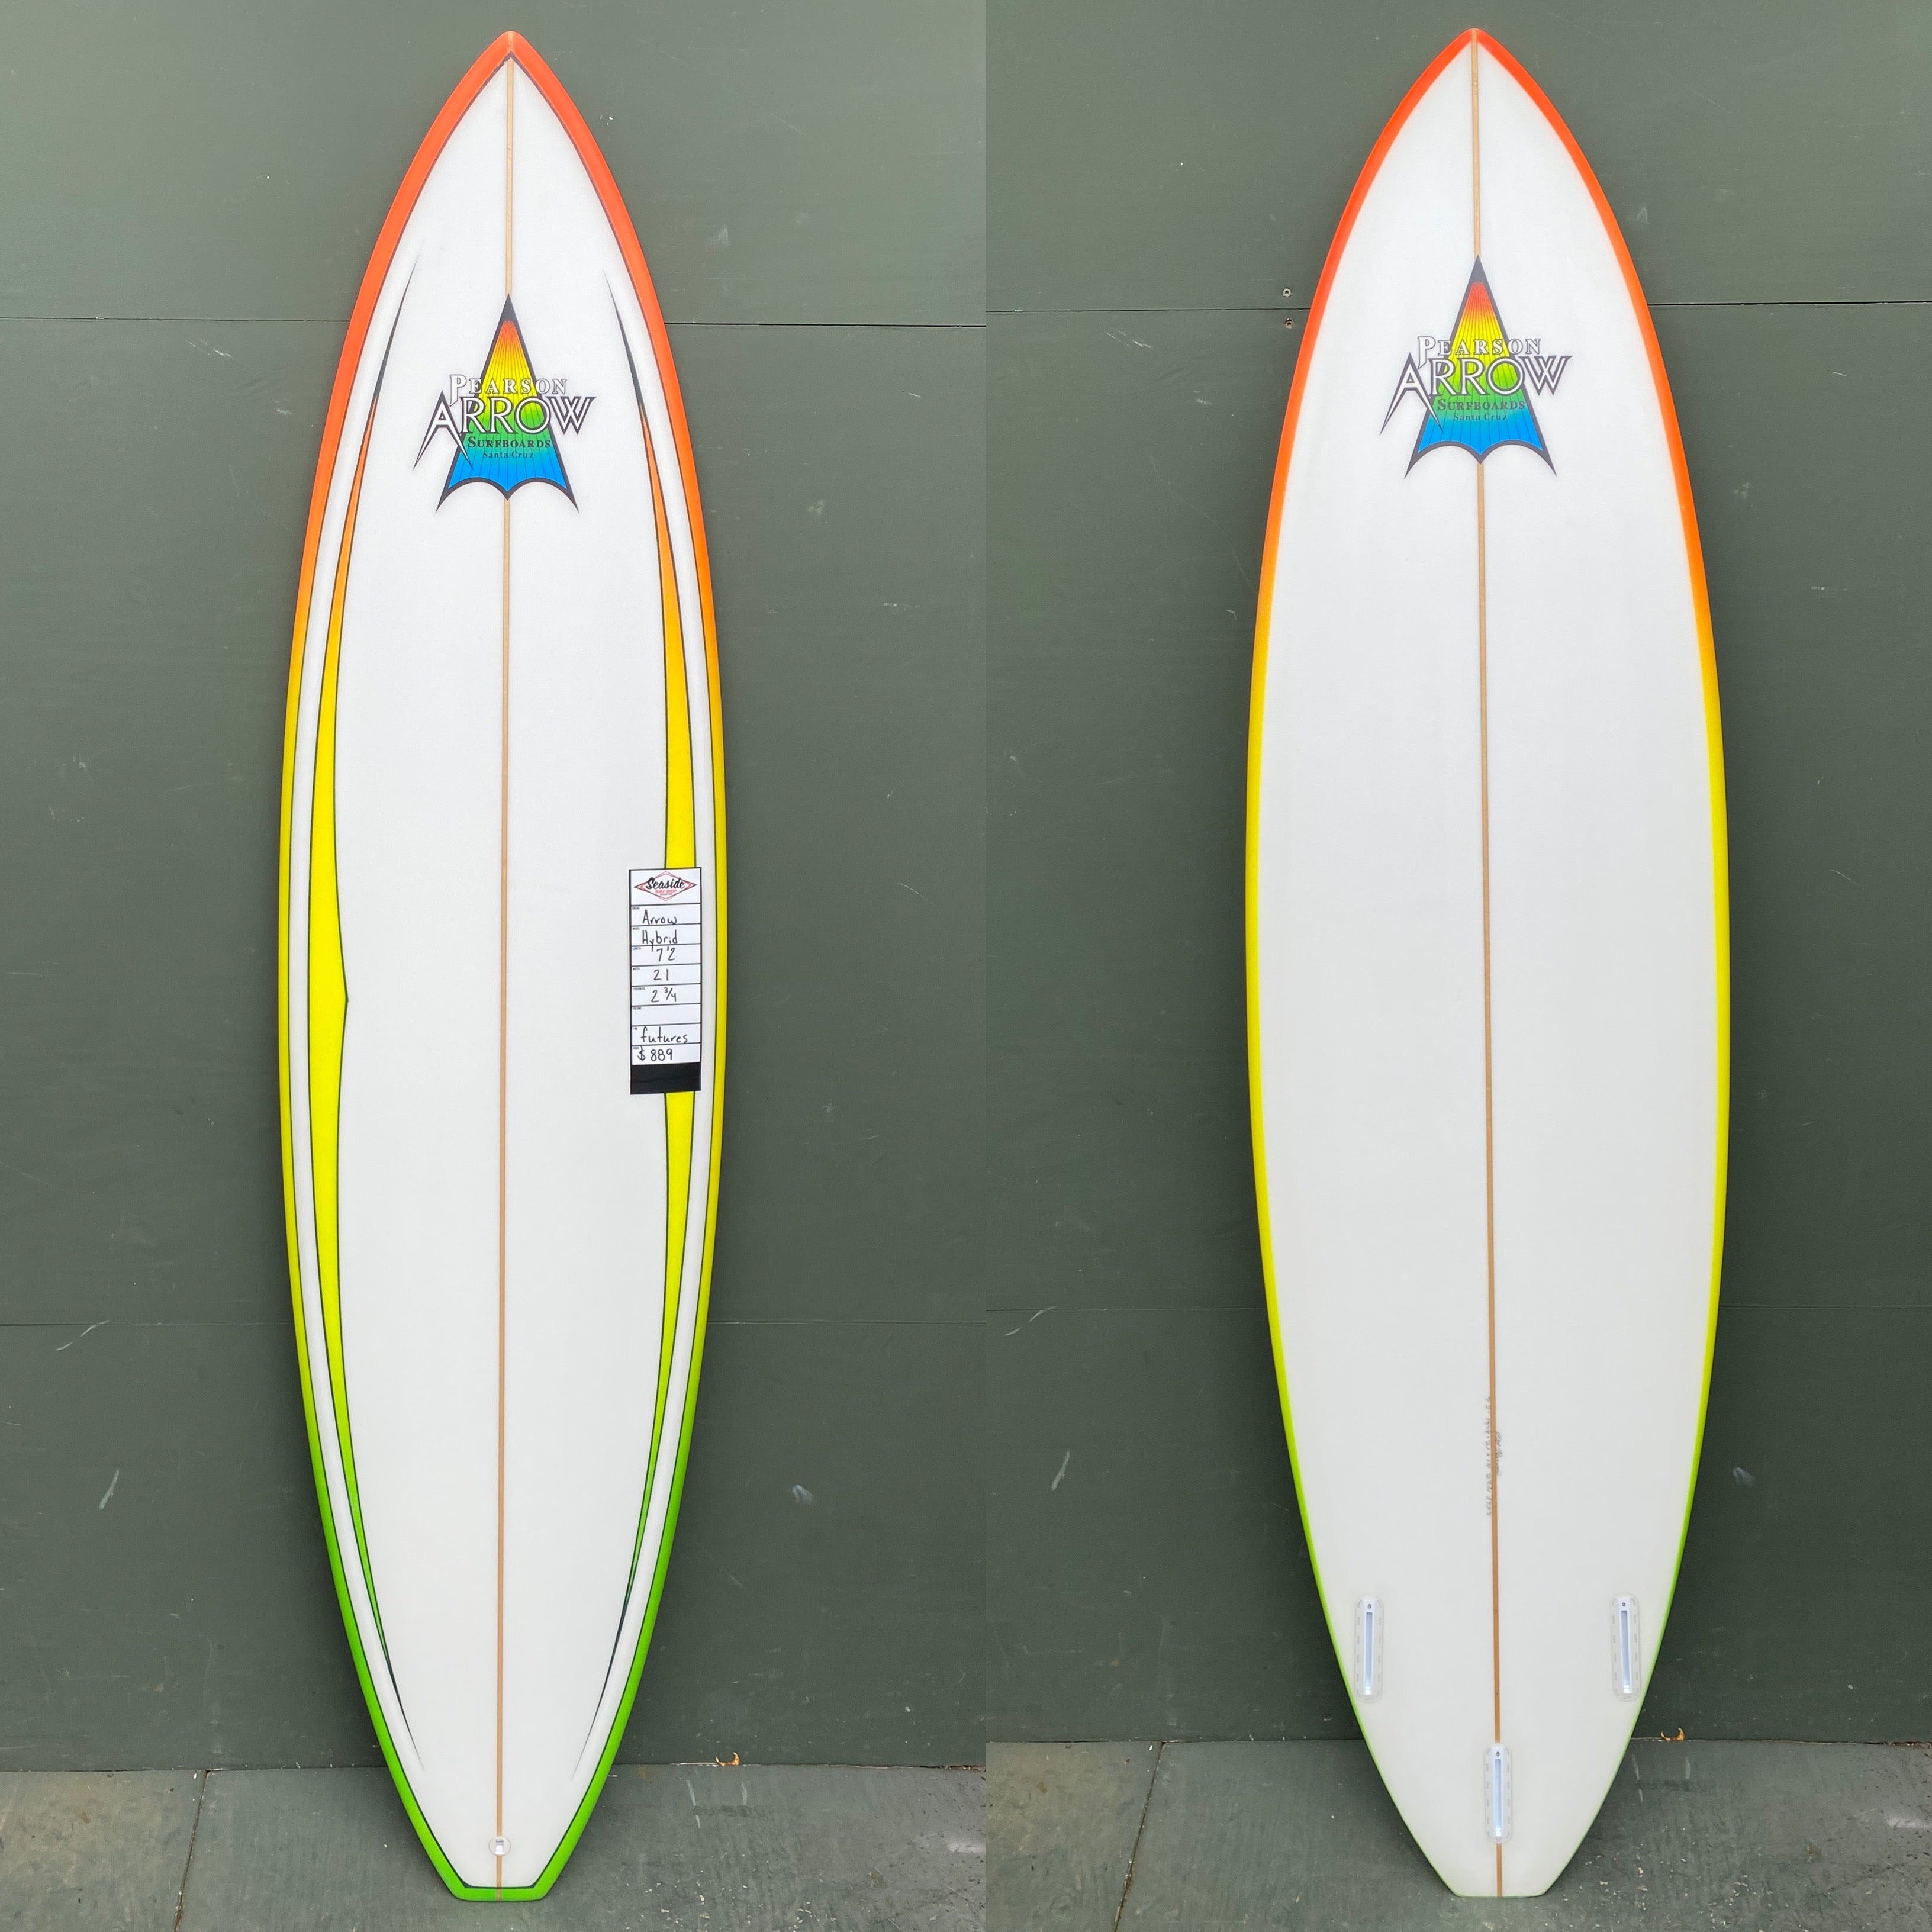 Pearson Arrow Surfboards - 7'2" Hybrid Surfboard - Seaside Surf Shop 